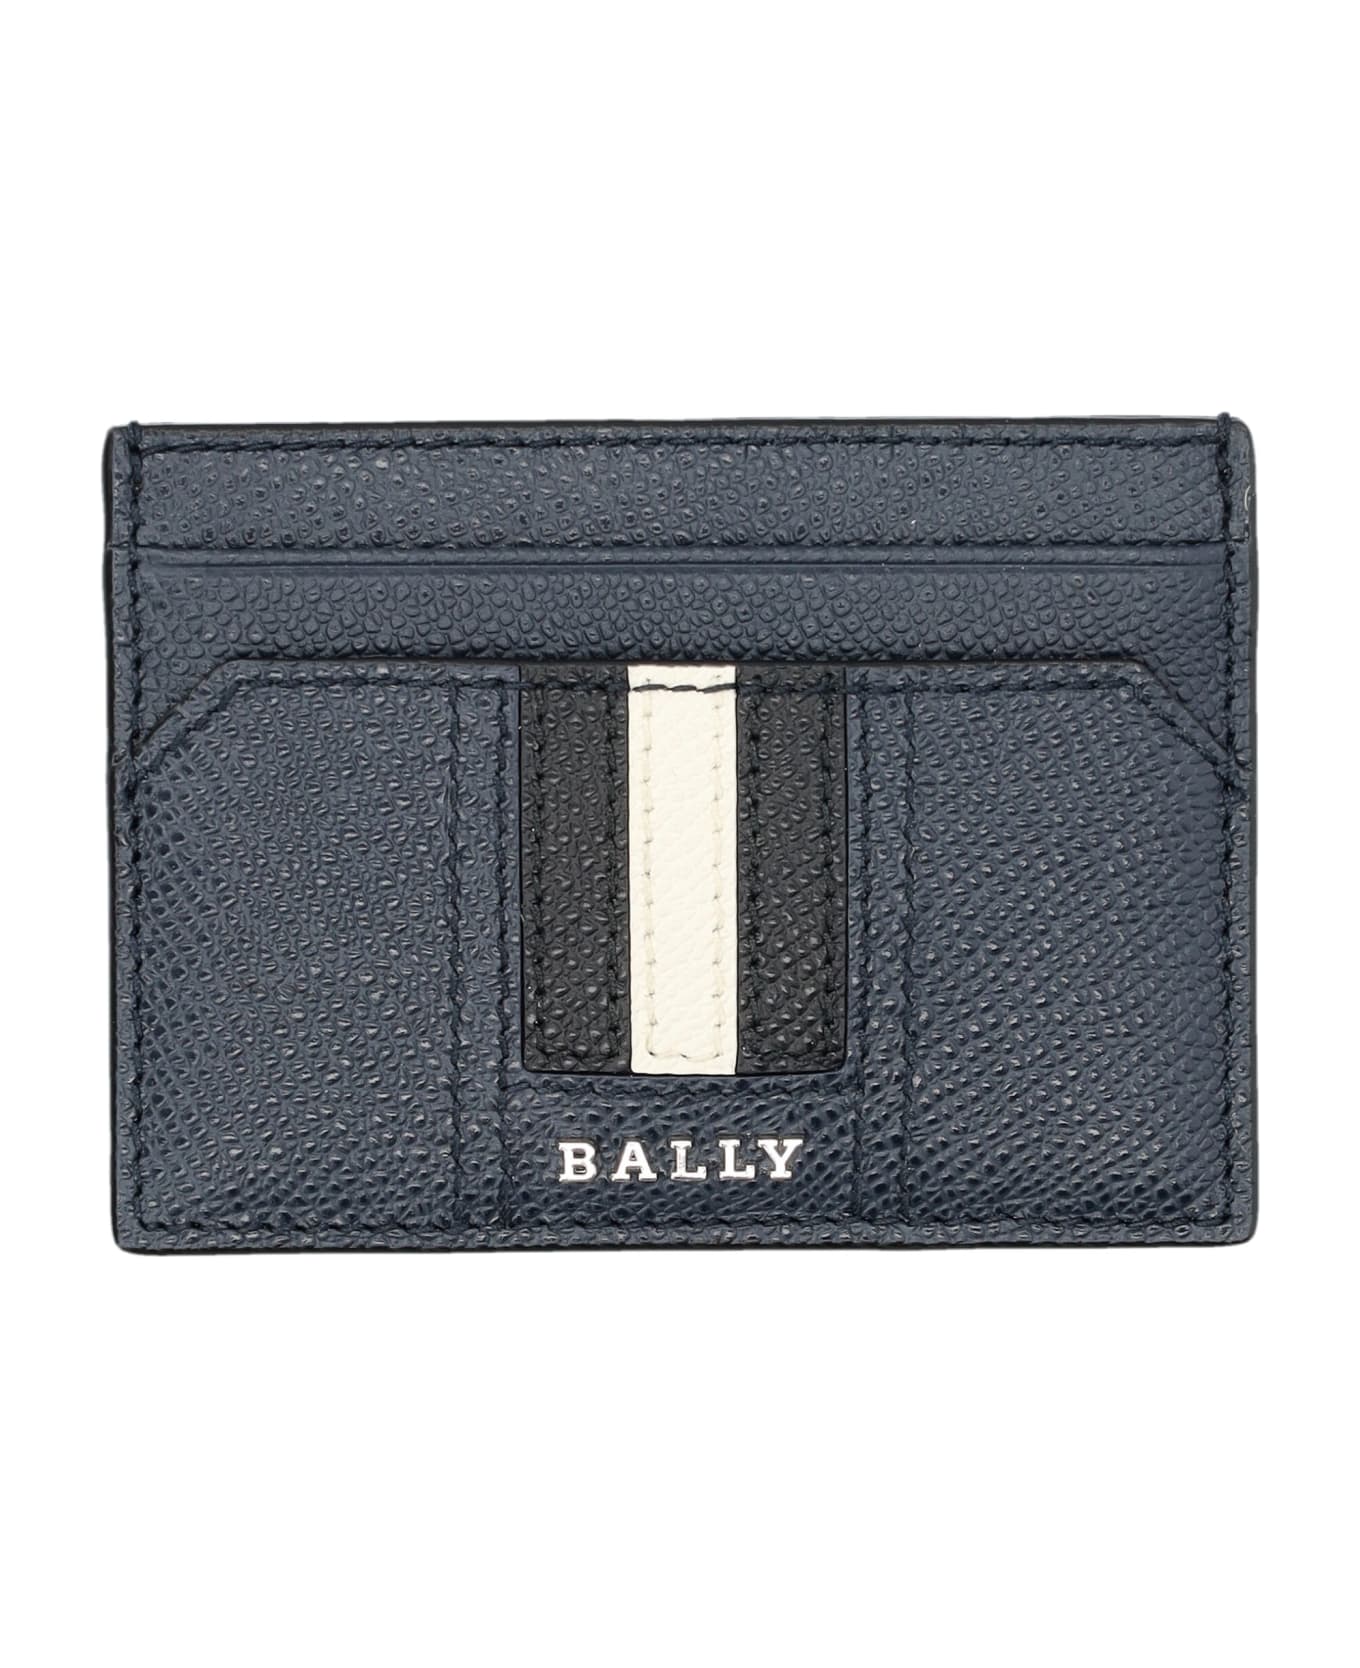 Bally Thar Lt Cardholder - NEW BLUE 財布